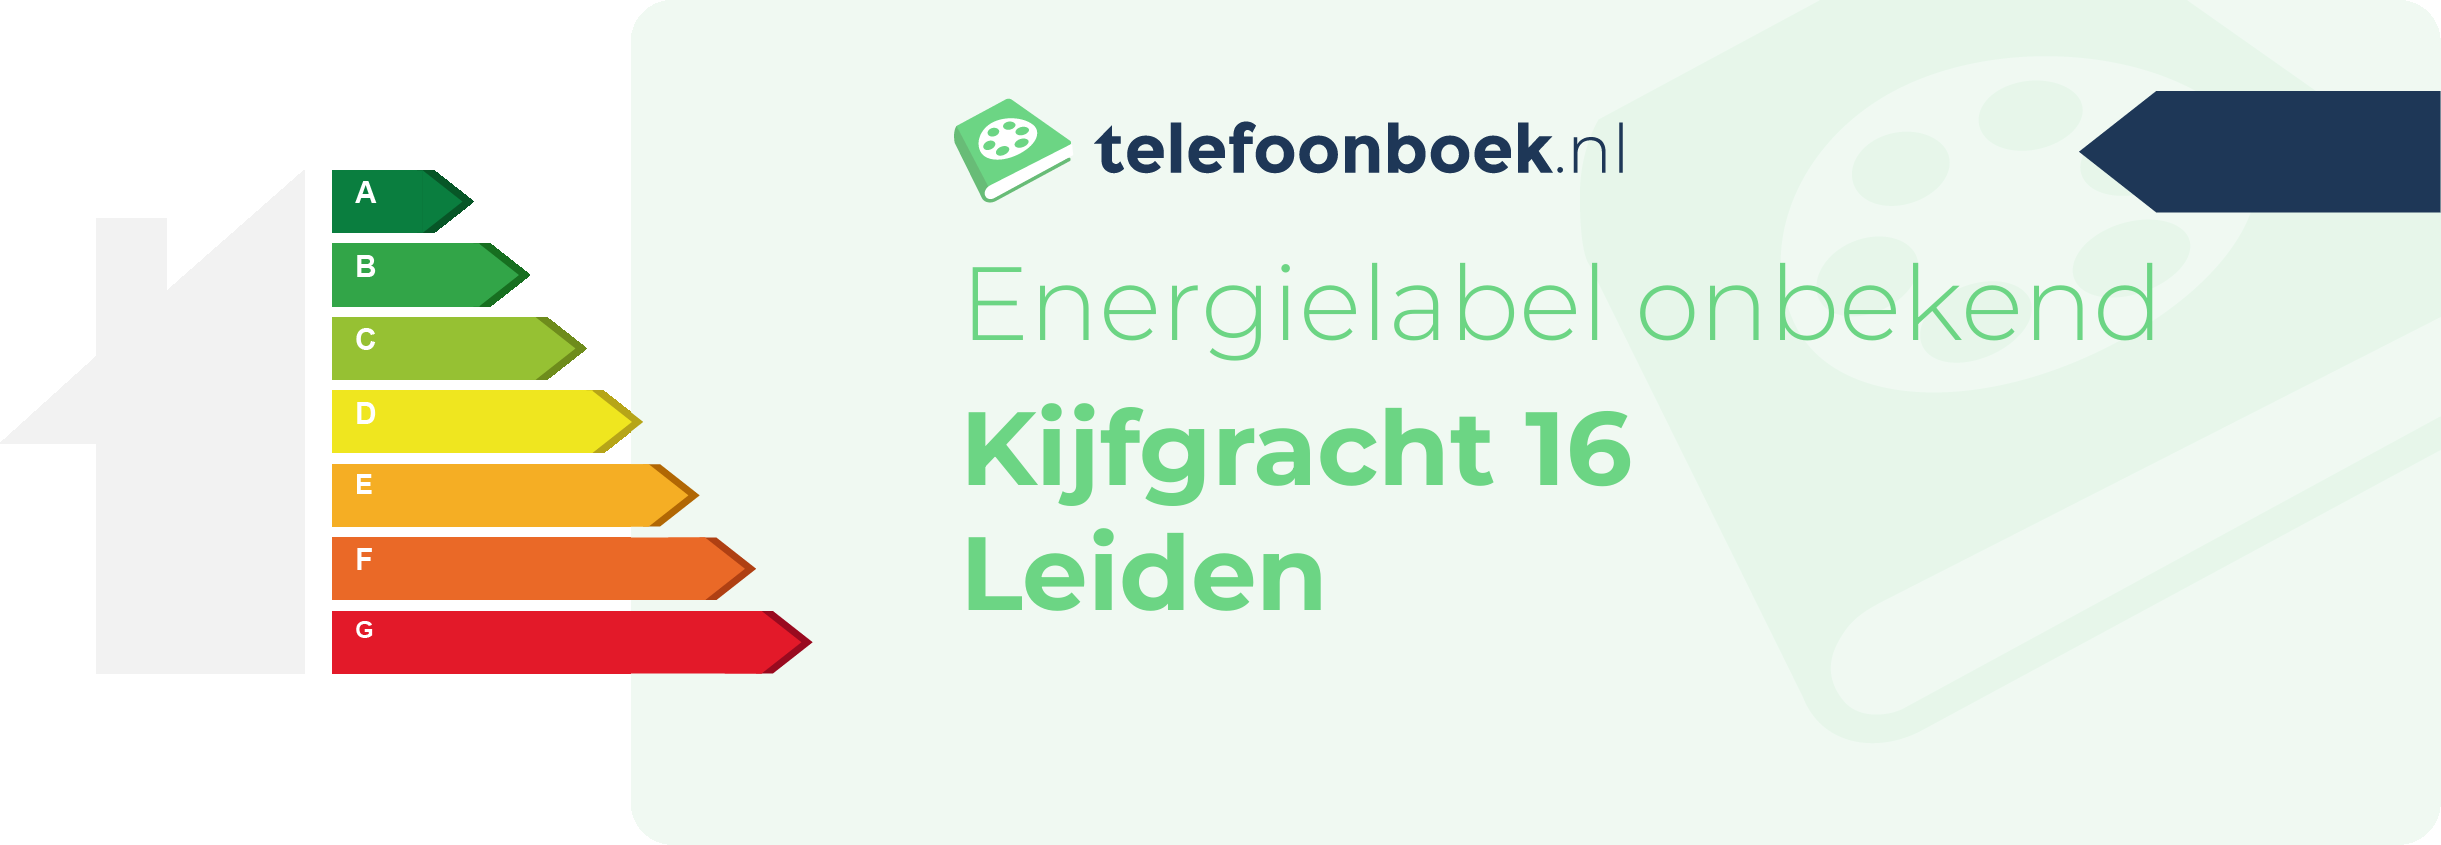 Energielabel Kijfgracht 16 Leiden